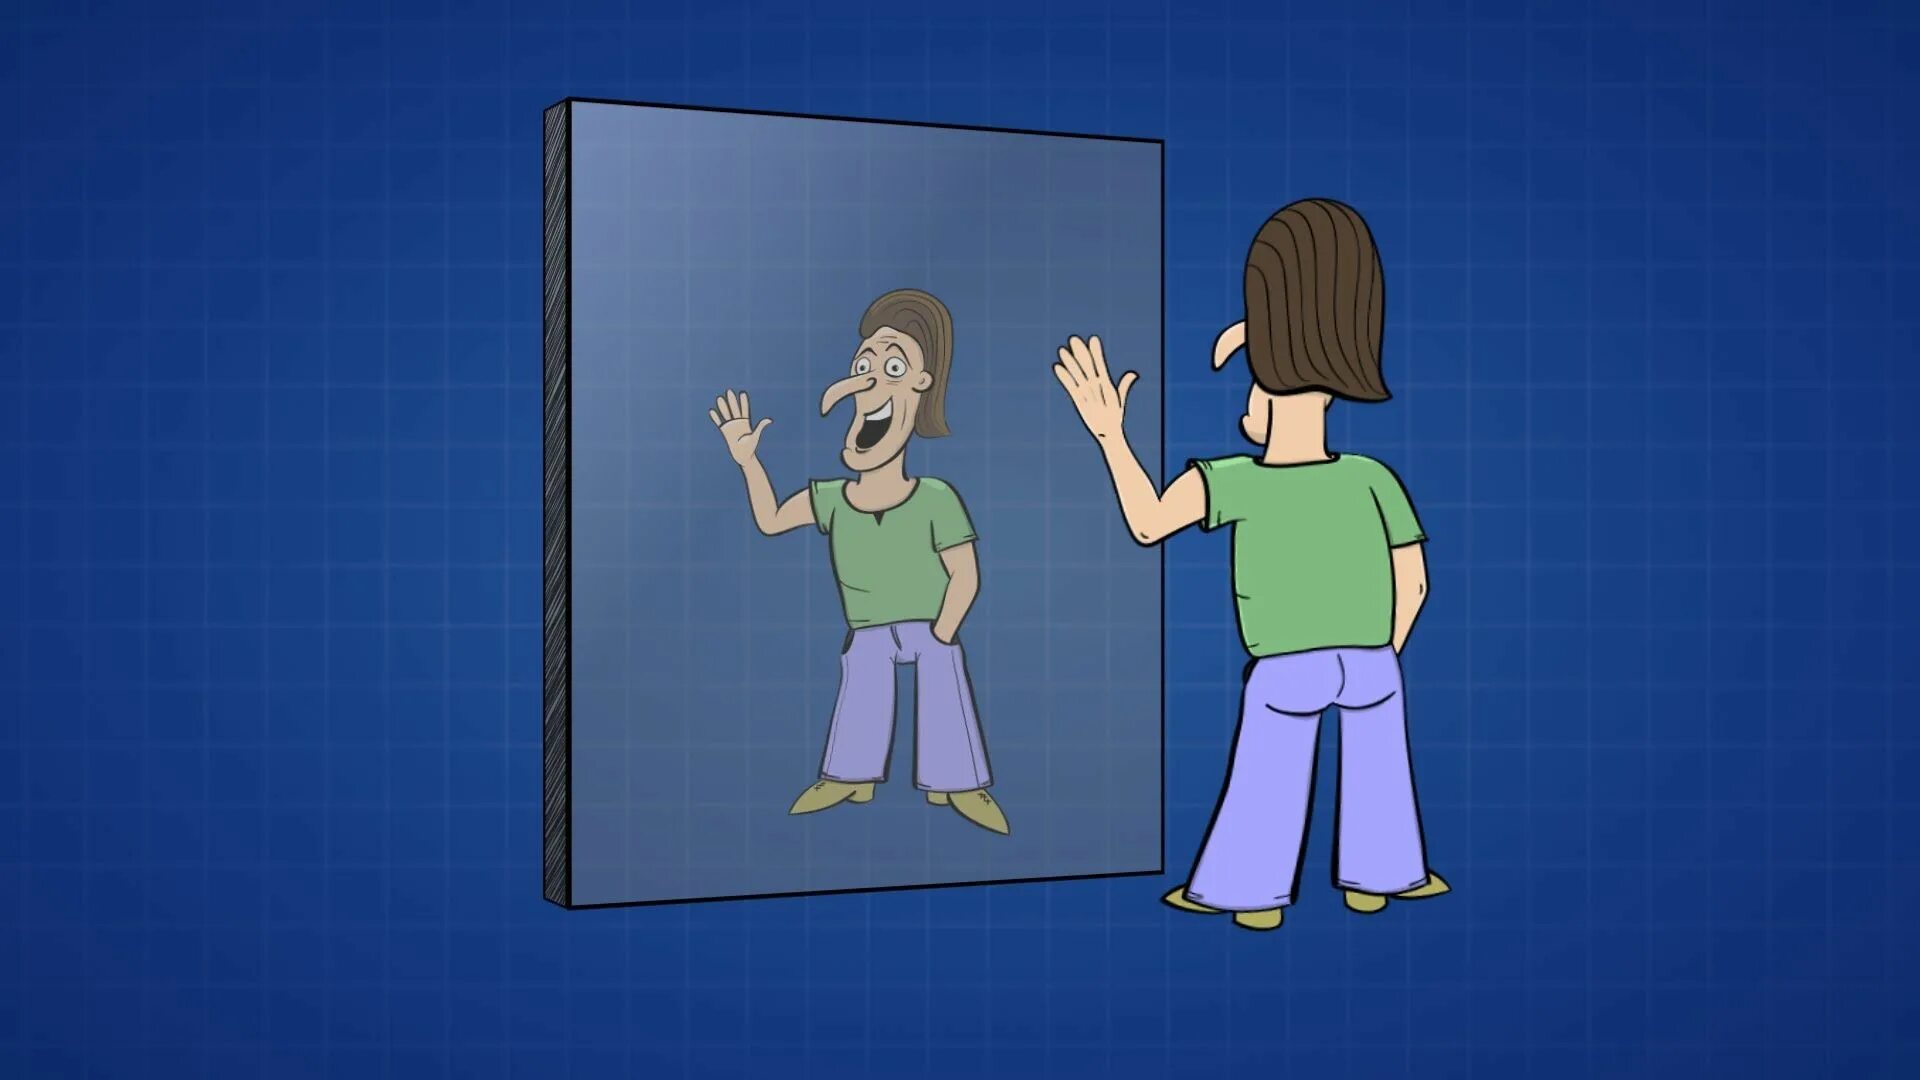 Поменять с правой на левую. Лево право в зеркале. Почему зеркало меняет местами право и лево. Почему зеркало меняет местами право и лево а верх и низ нет. Право и лево в зеркальном отражении.